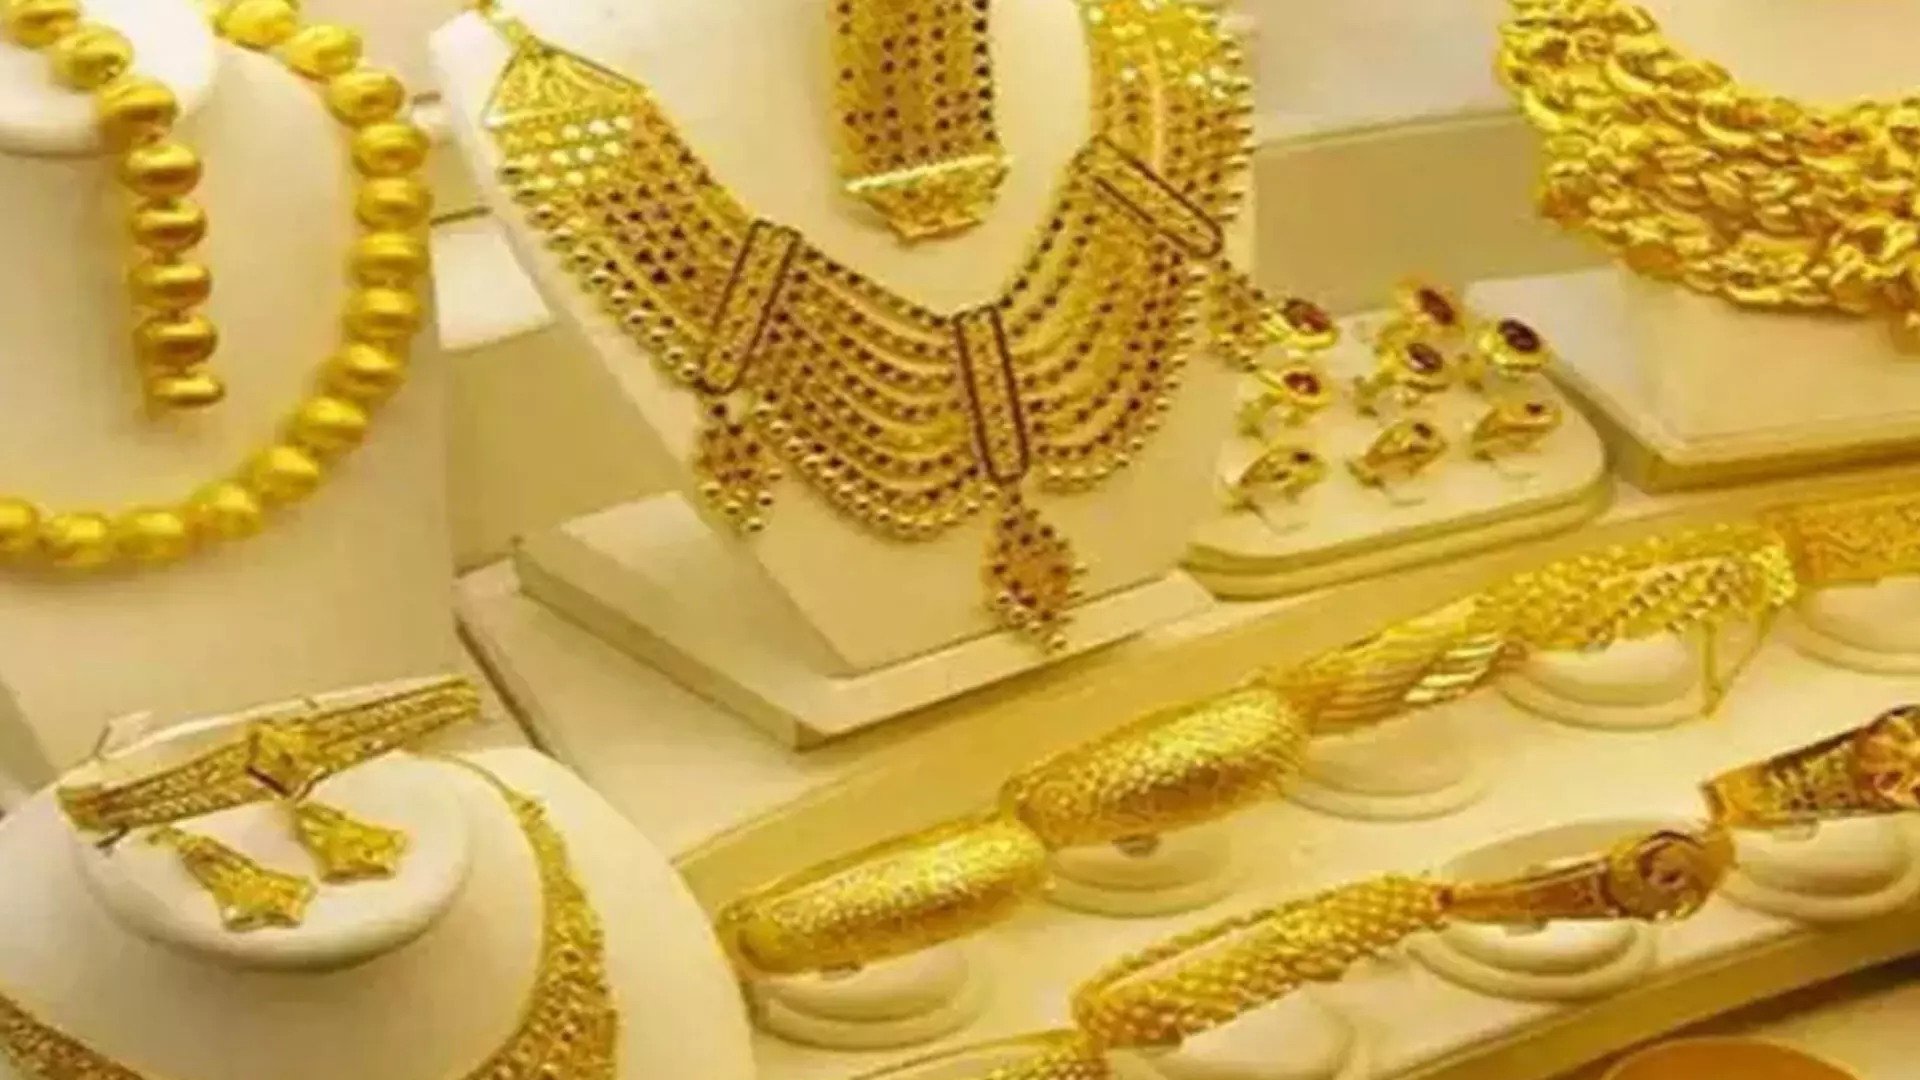 सोने की कीमत 30 रुपये प्रति ग्राम बढ़ी, अब चेन्नई में कीमत 53,840 रुपये